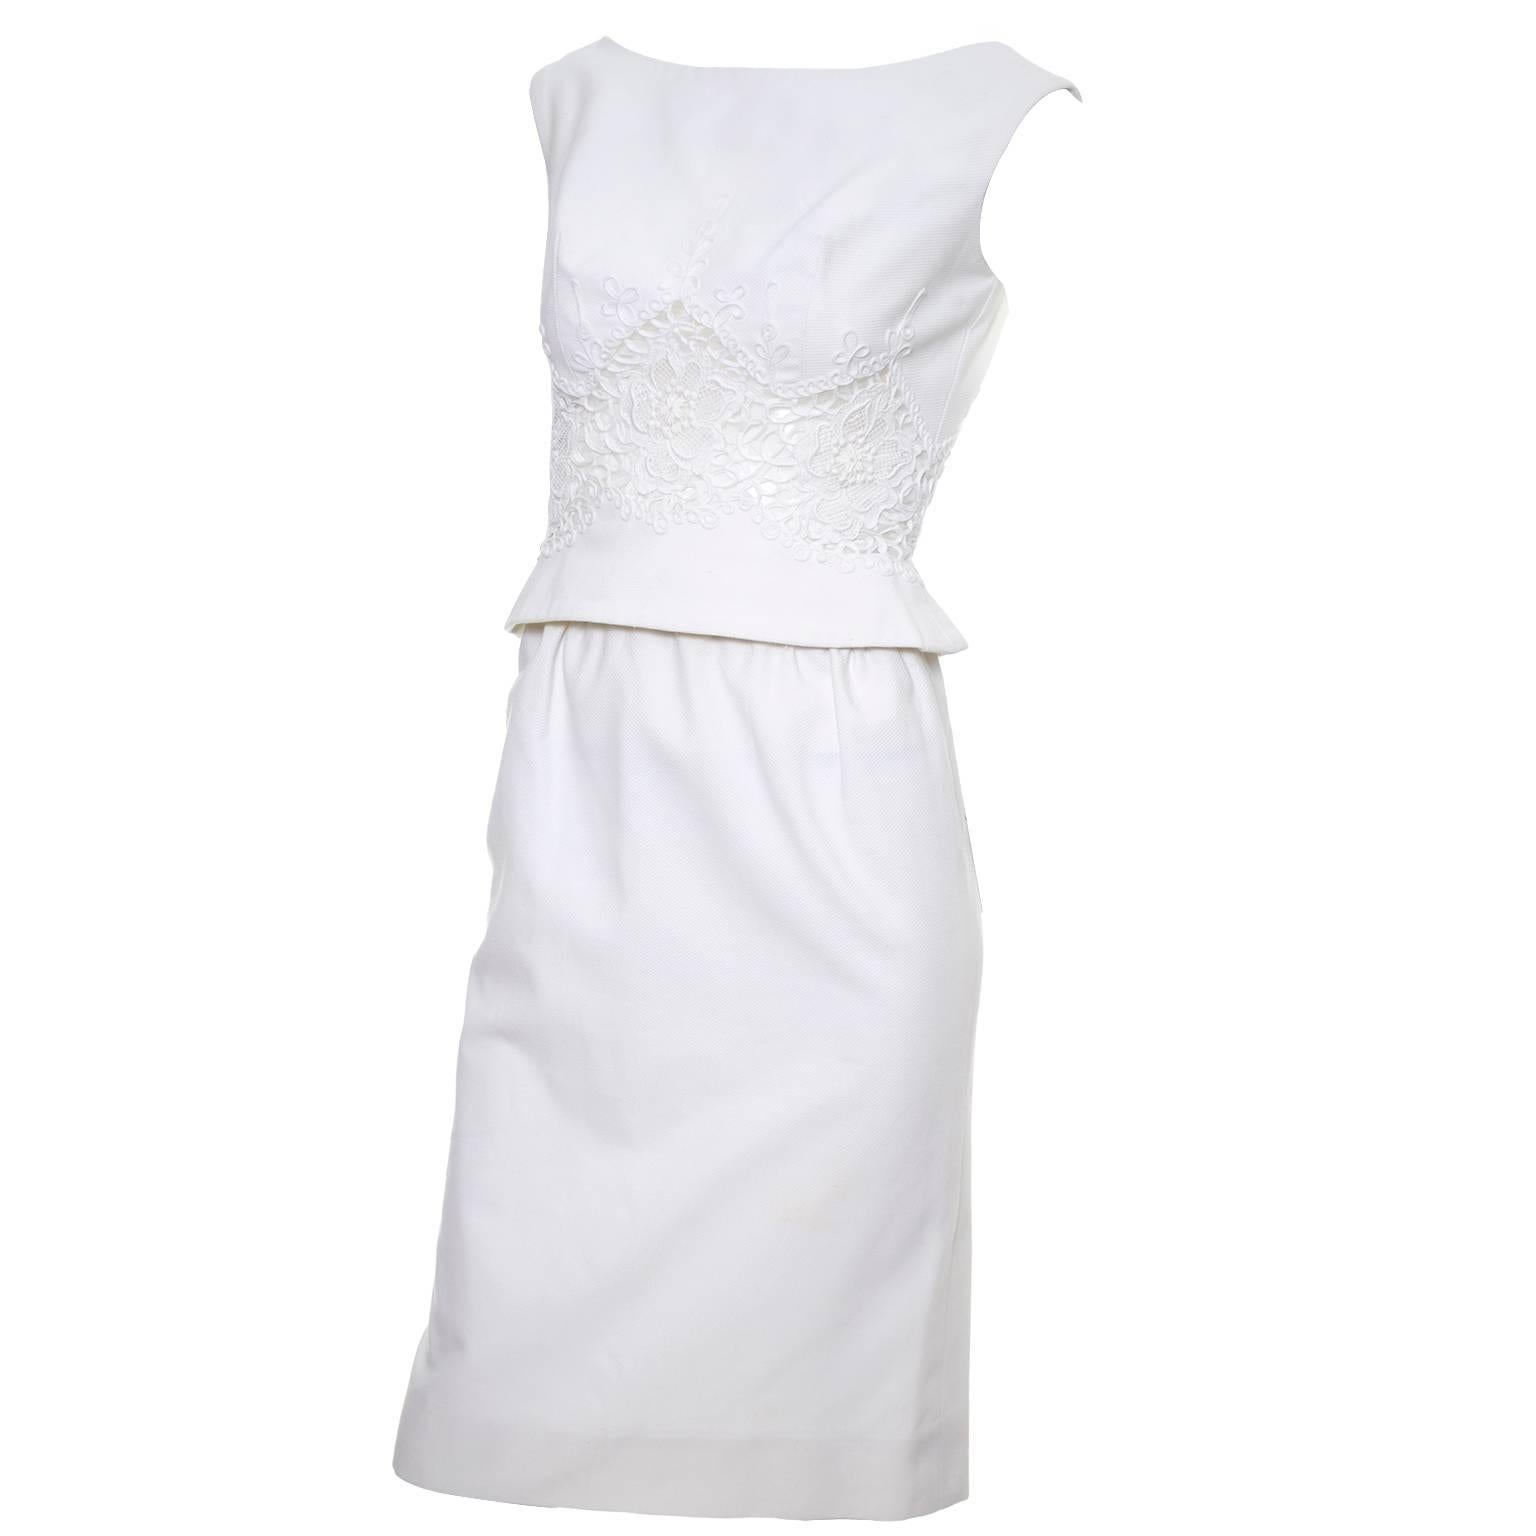 Carlye White Pique Vintage Dress 2pc Lace Mesh Peek a Boo Peplum Bodice XS For Sale